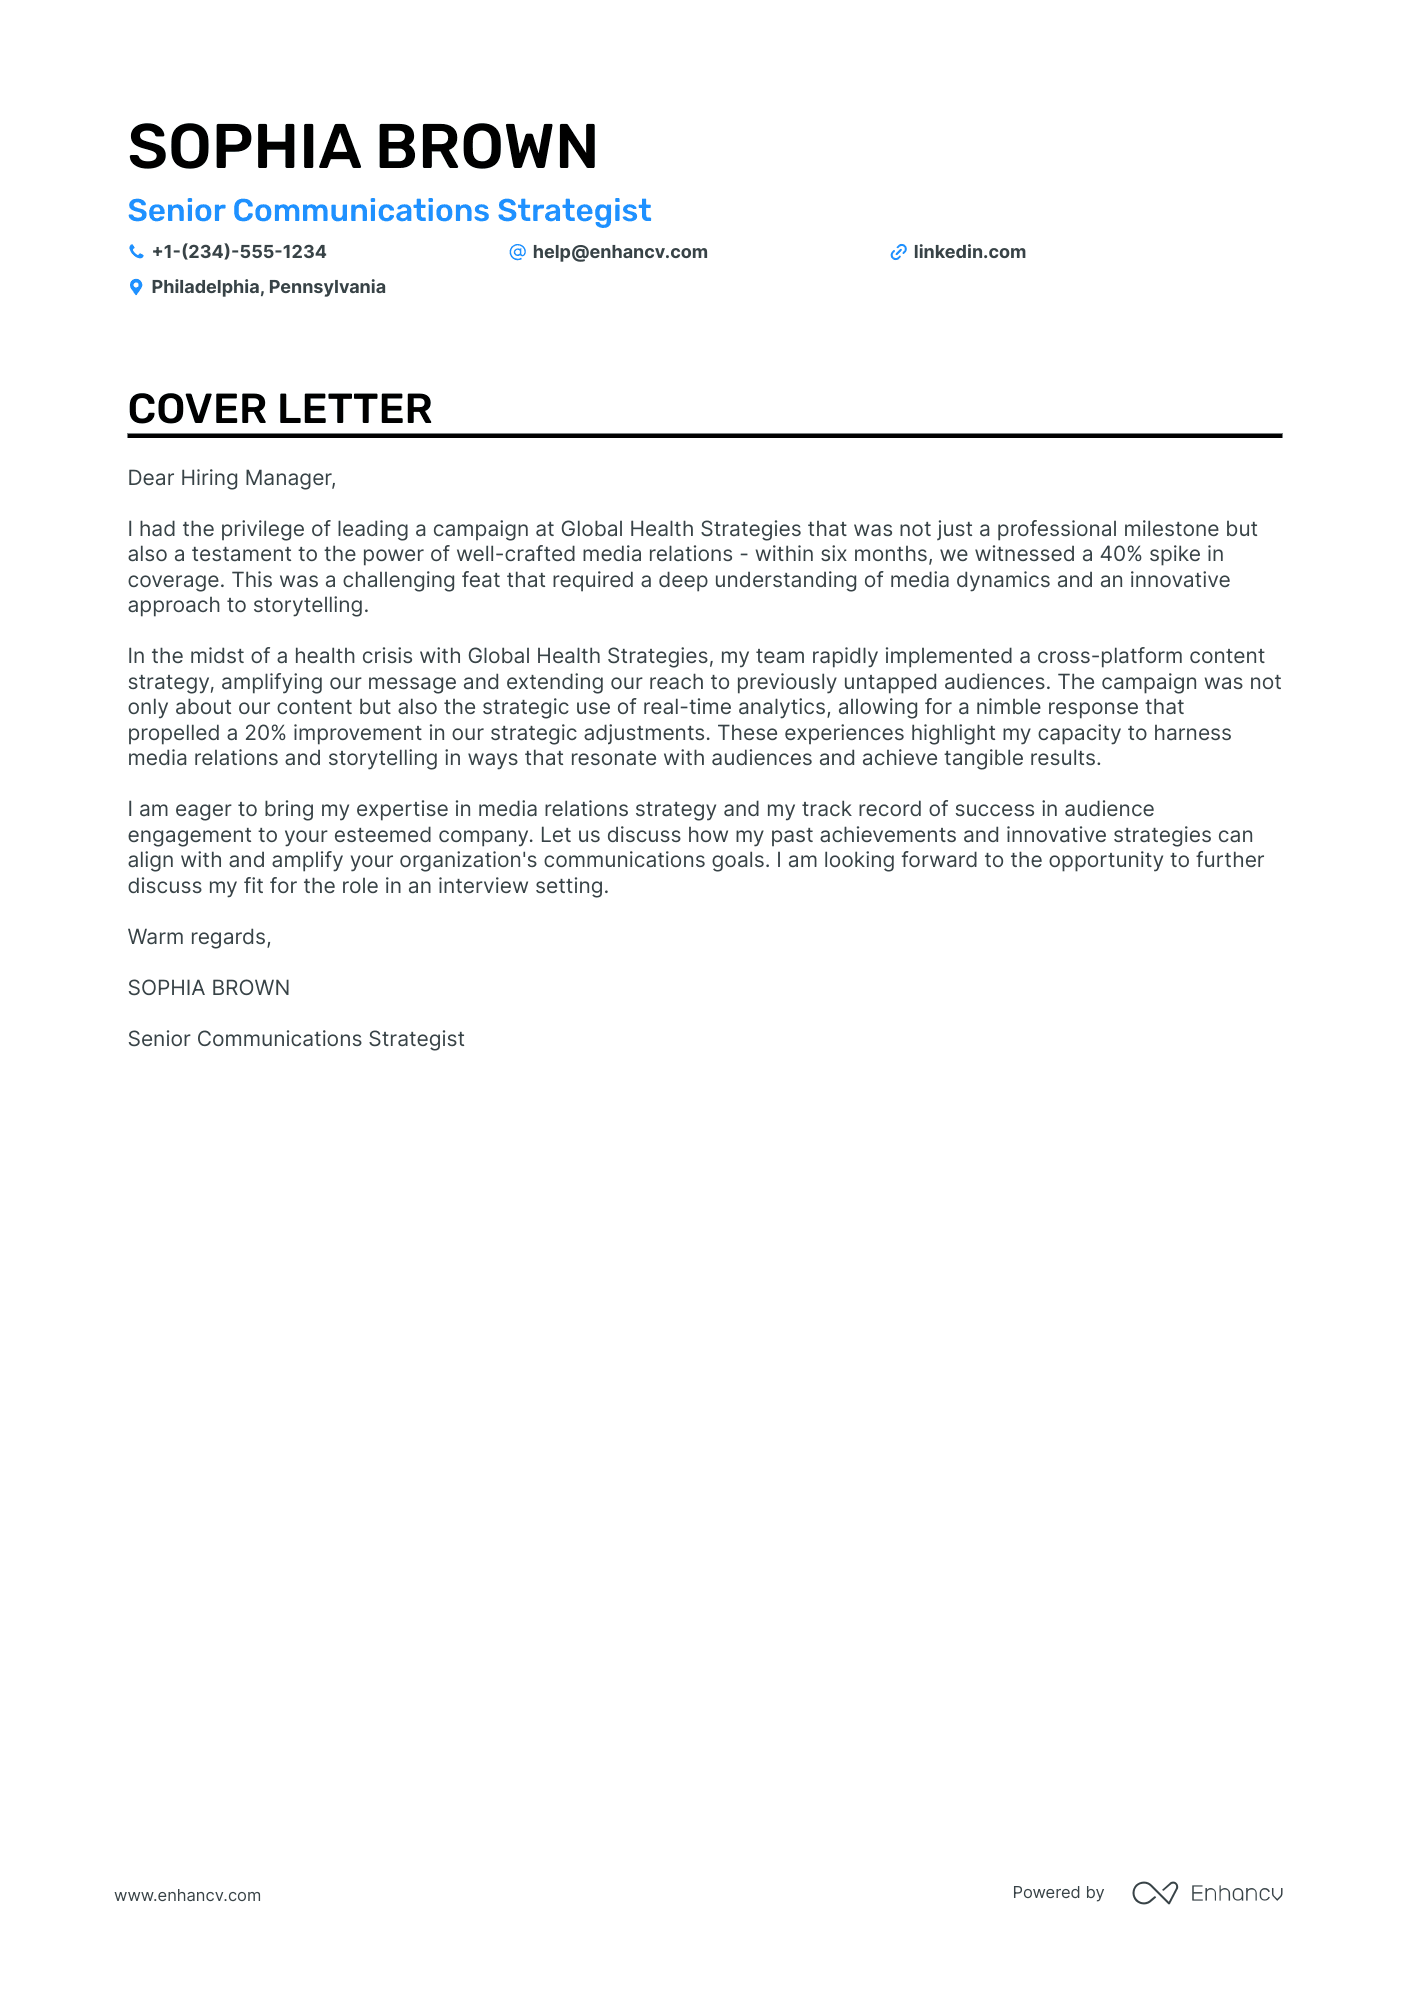 cover letter for journalist job